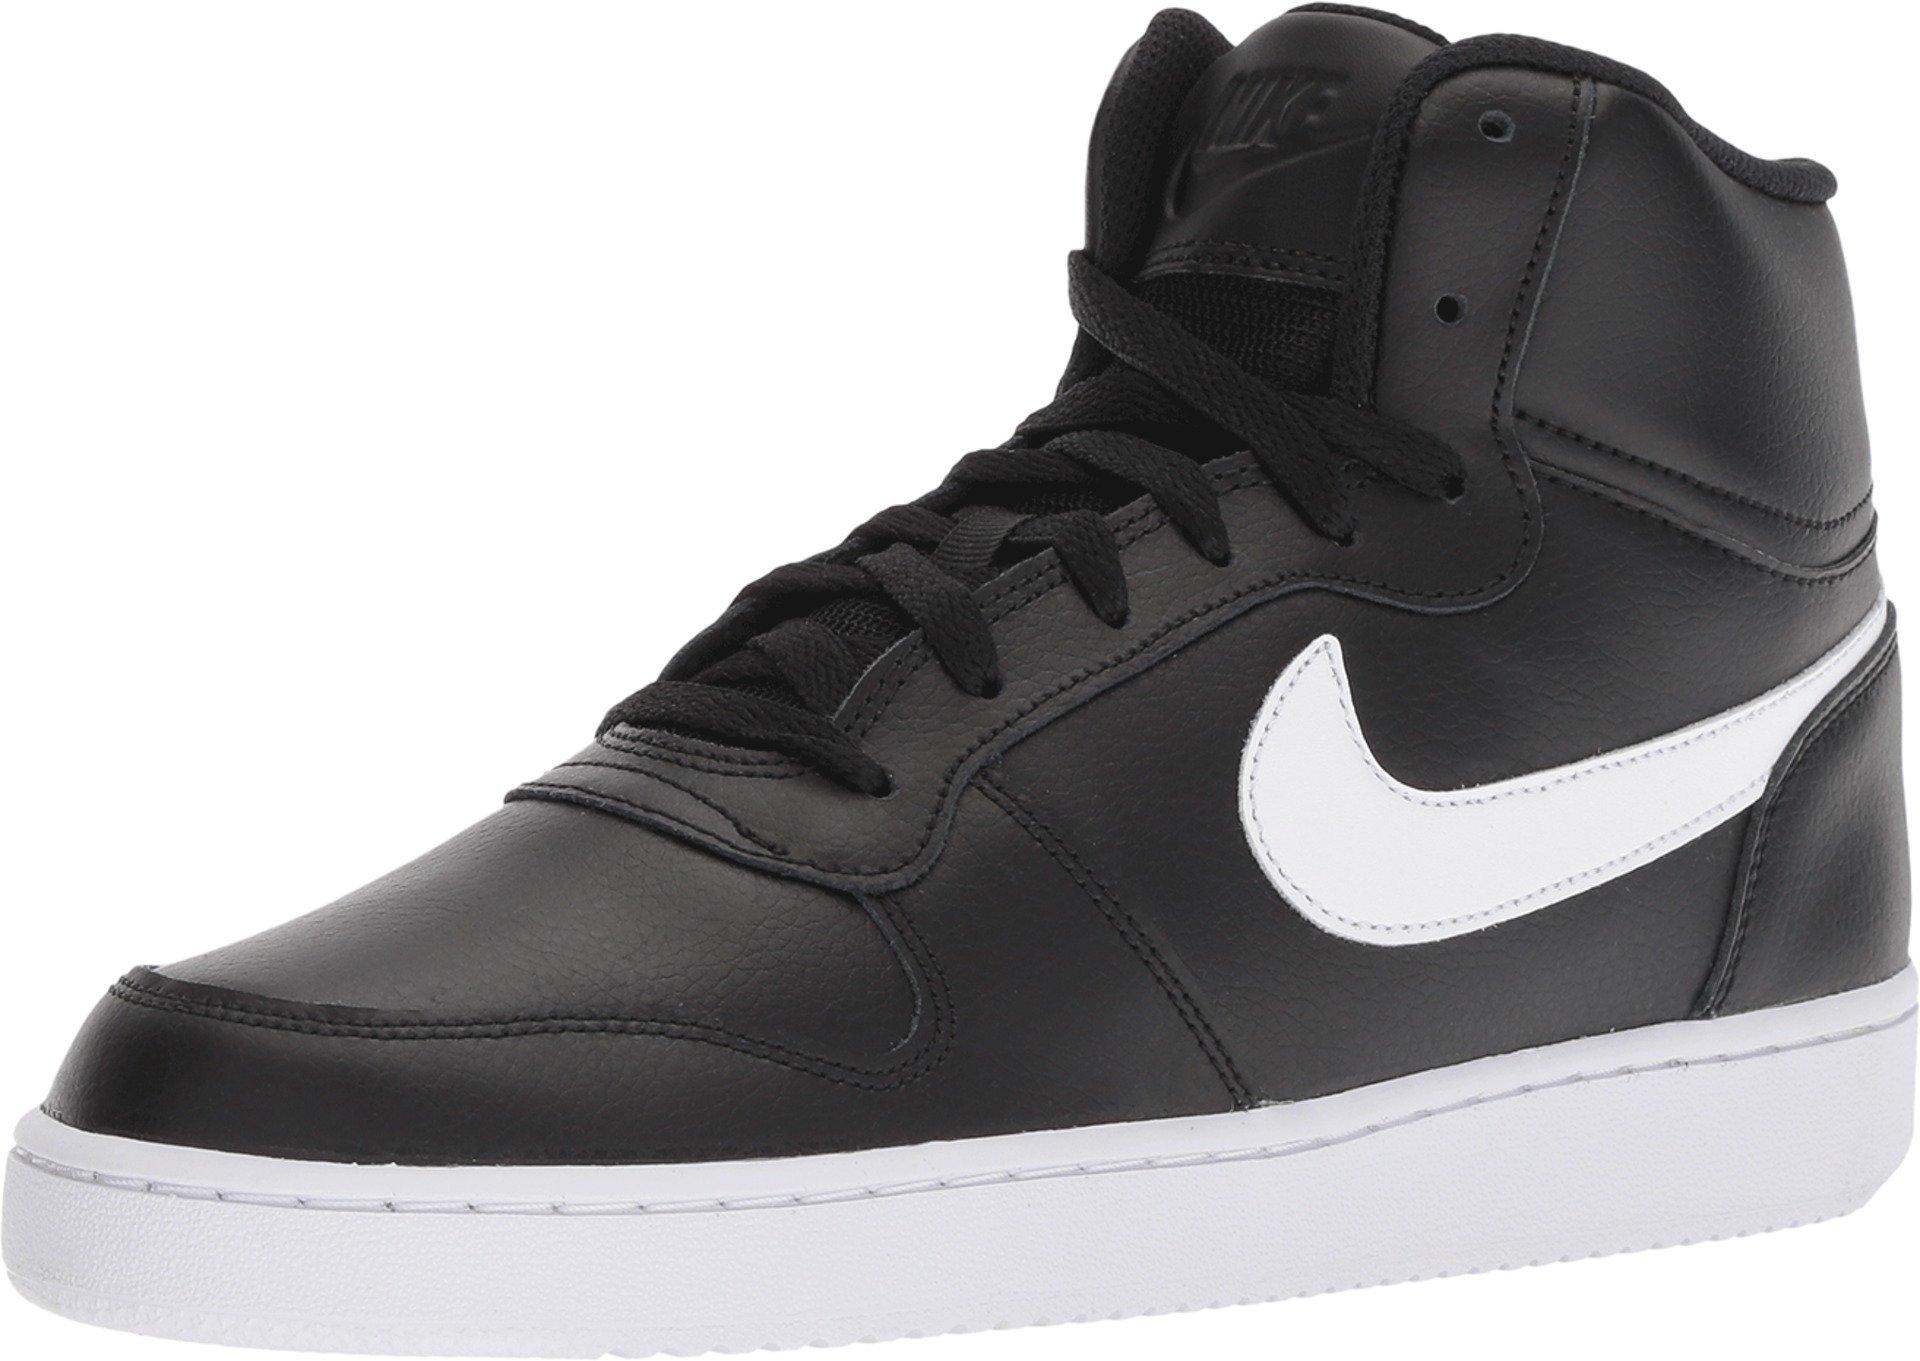 Nike Rubber Ebernon Mid Basketball Shoes in Black/White (Black) for Men ...